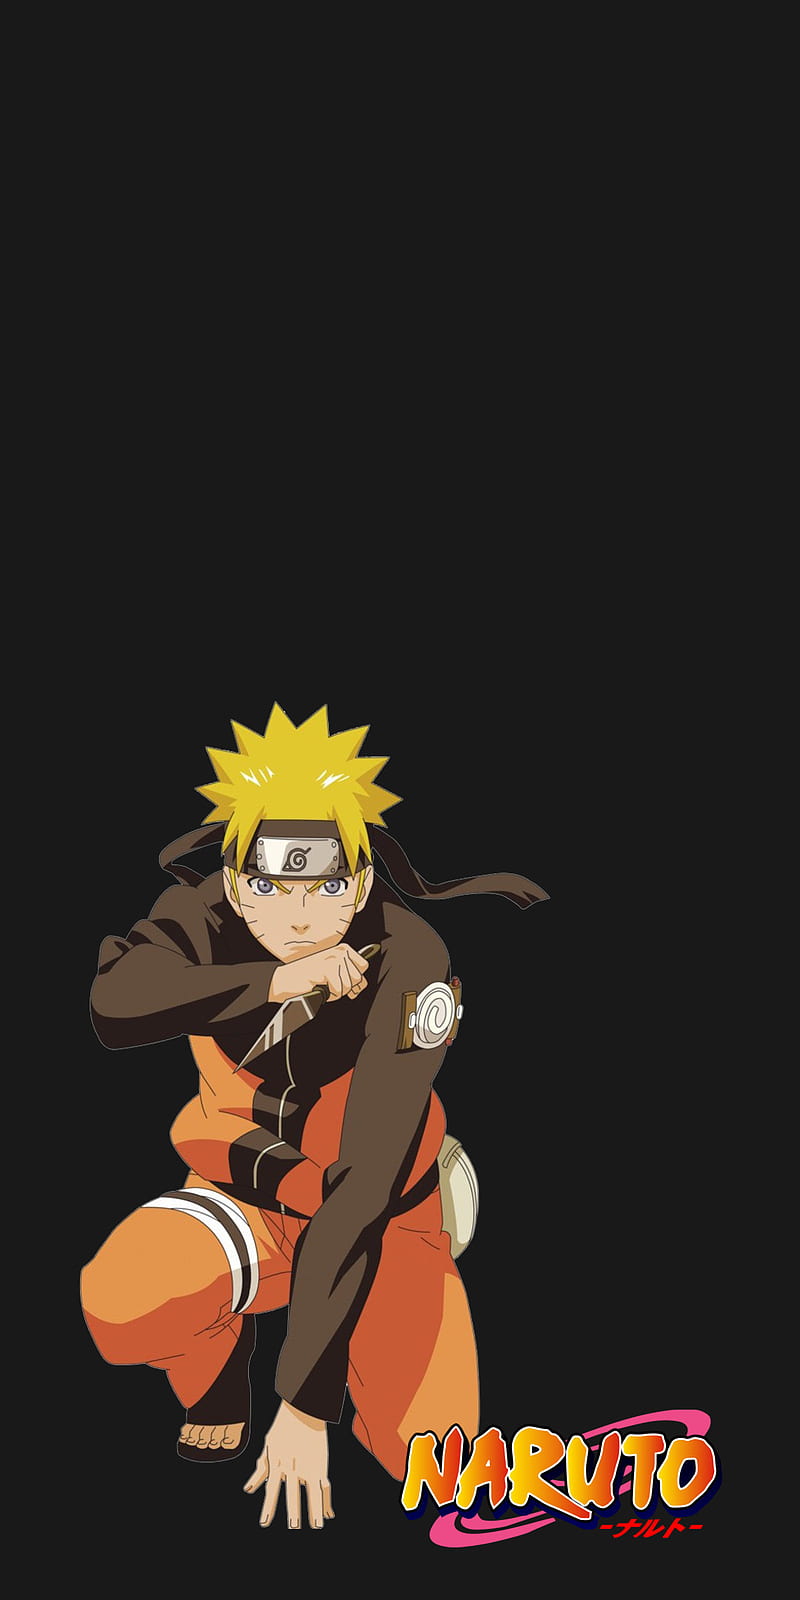 Naruto blacked